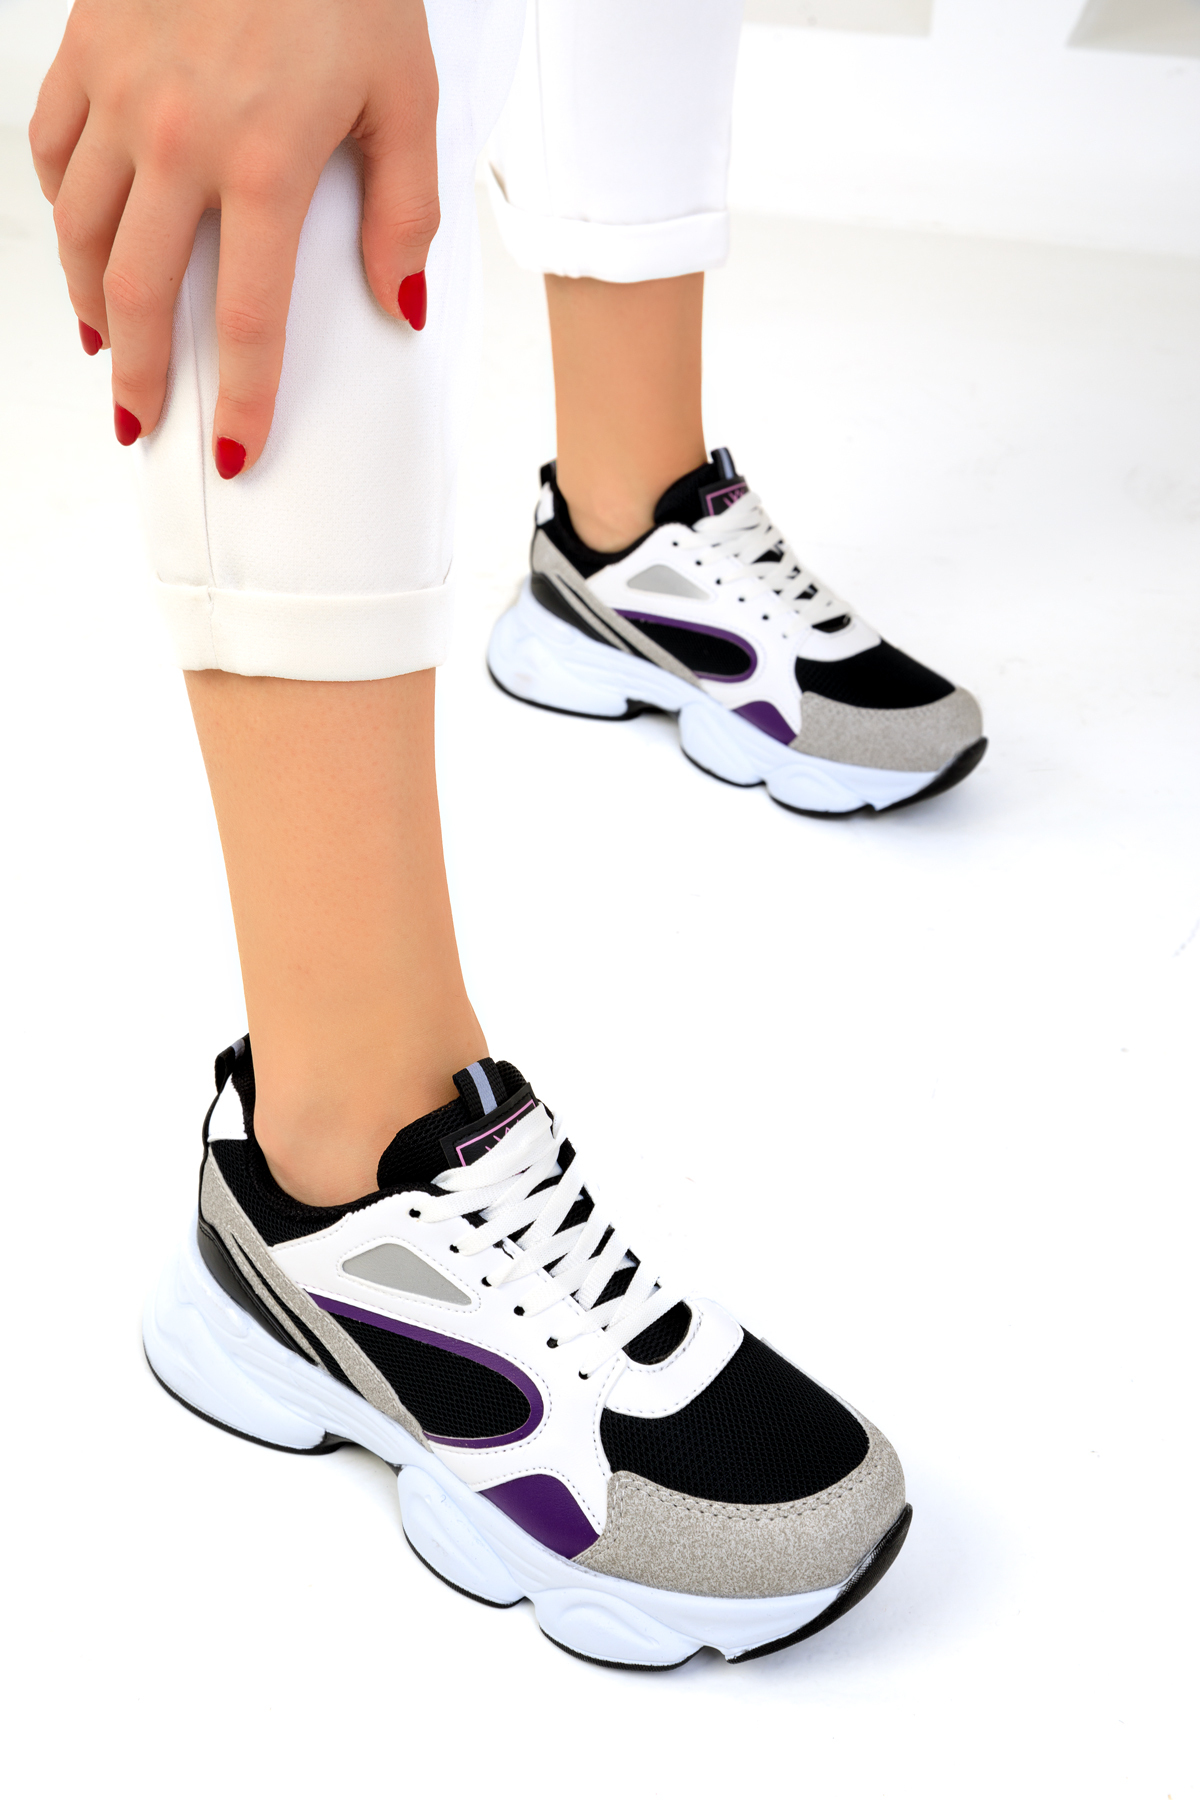 Soho Grey-Black-Purple Women's Sneakers 17226